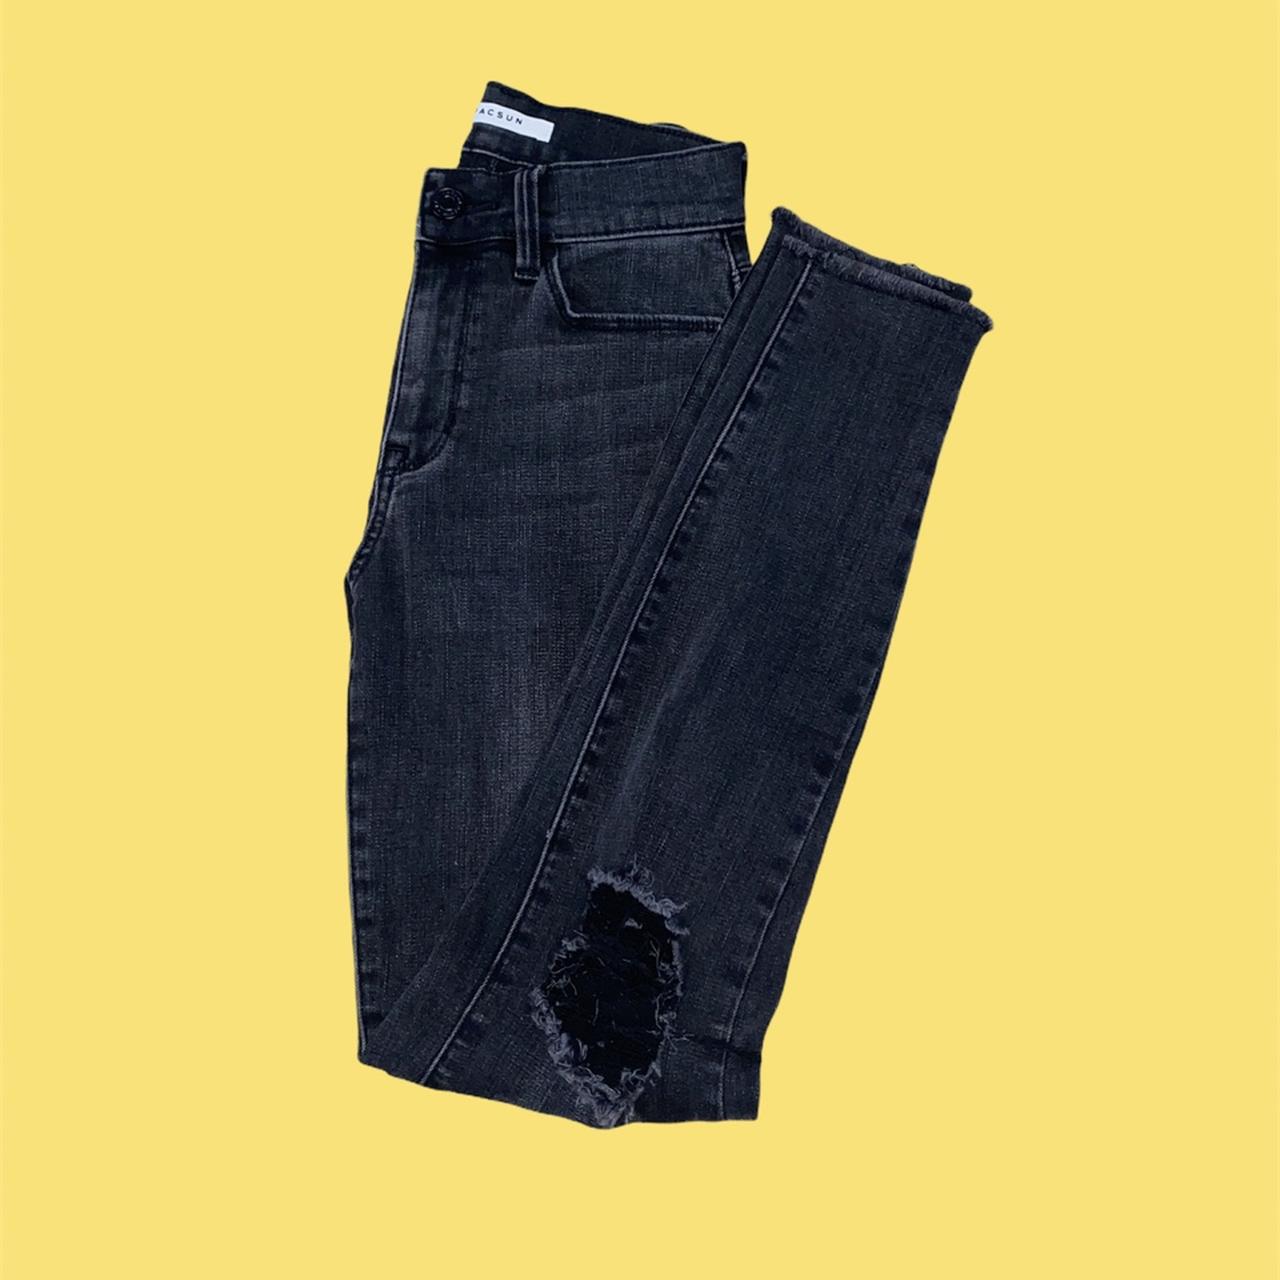 PacSun Women's Black Jeans | Depop